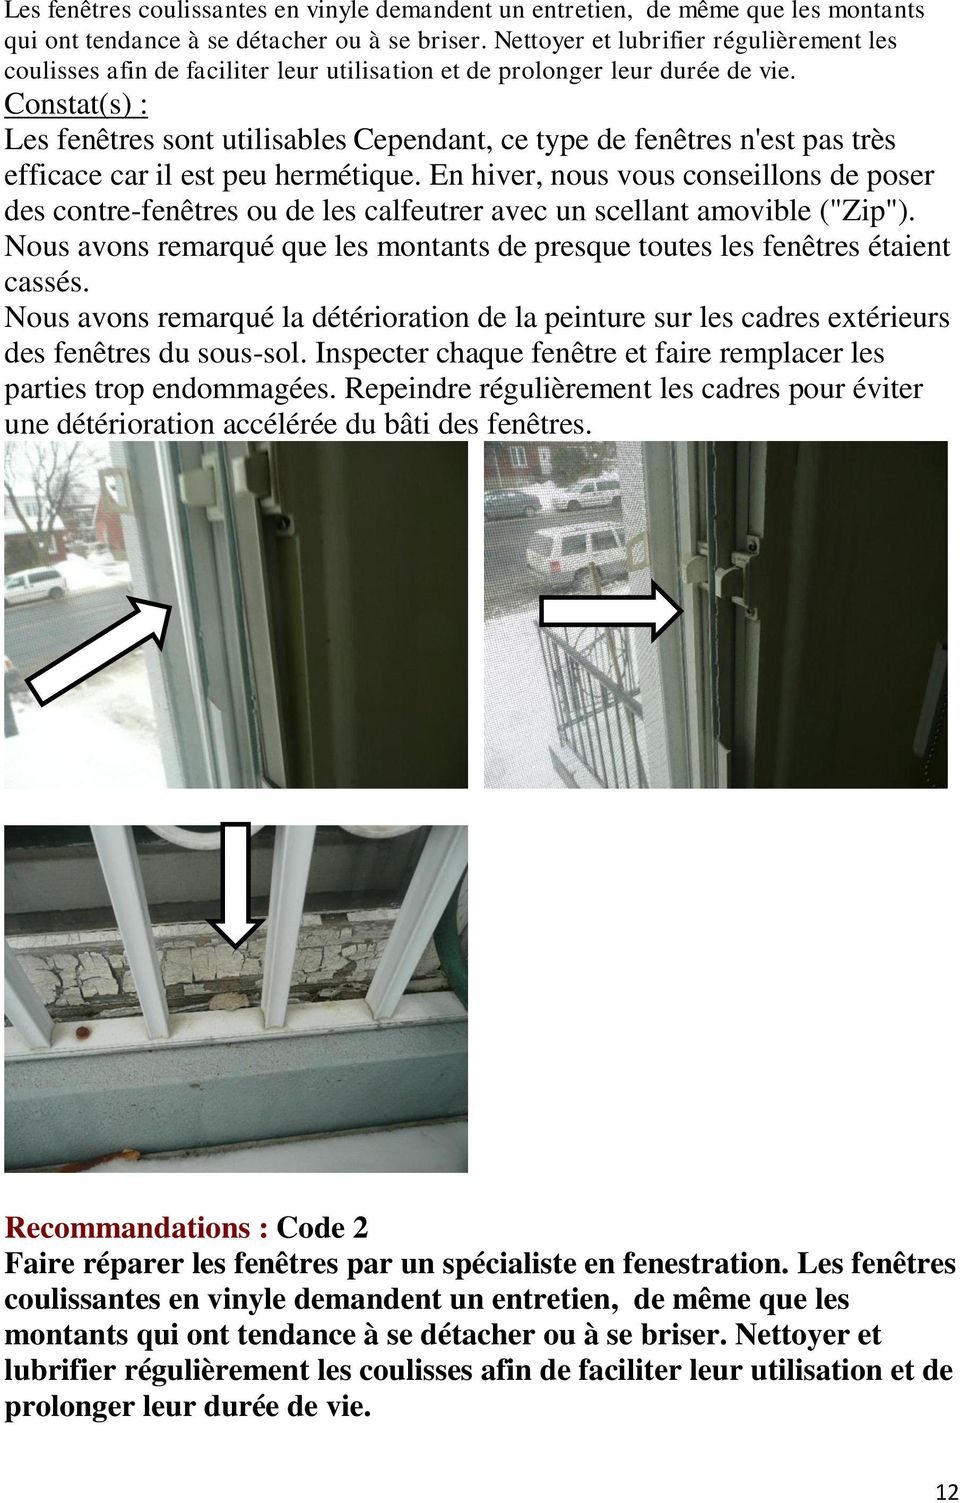 Constat(s) : Les fenêtres sont utilisables Cependant, ce type de fenêtres n'est pas très efficace car il est peu hermétique.